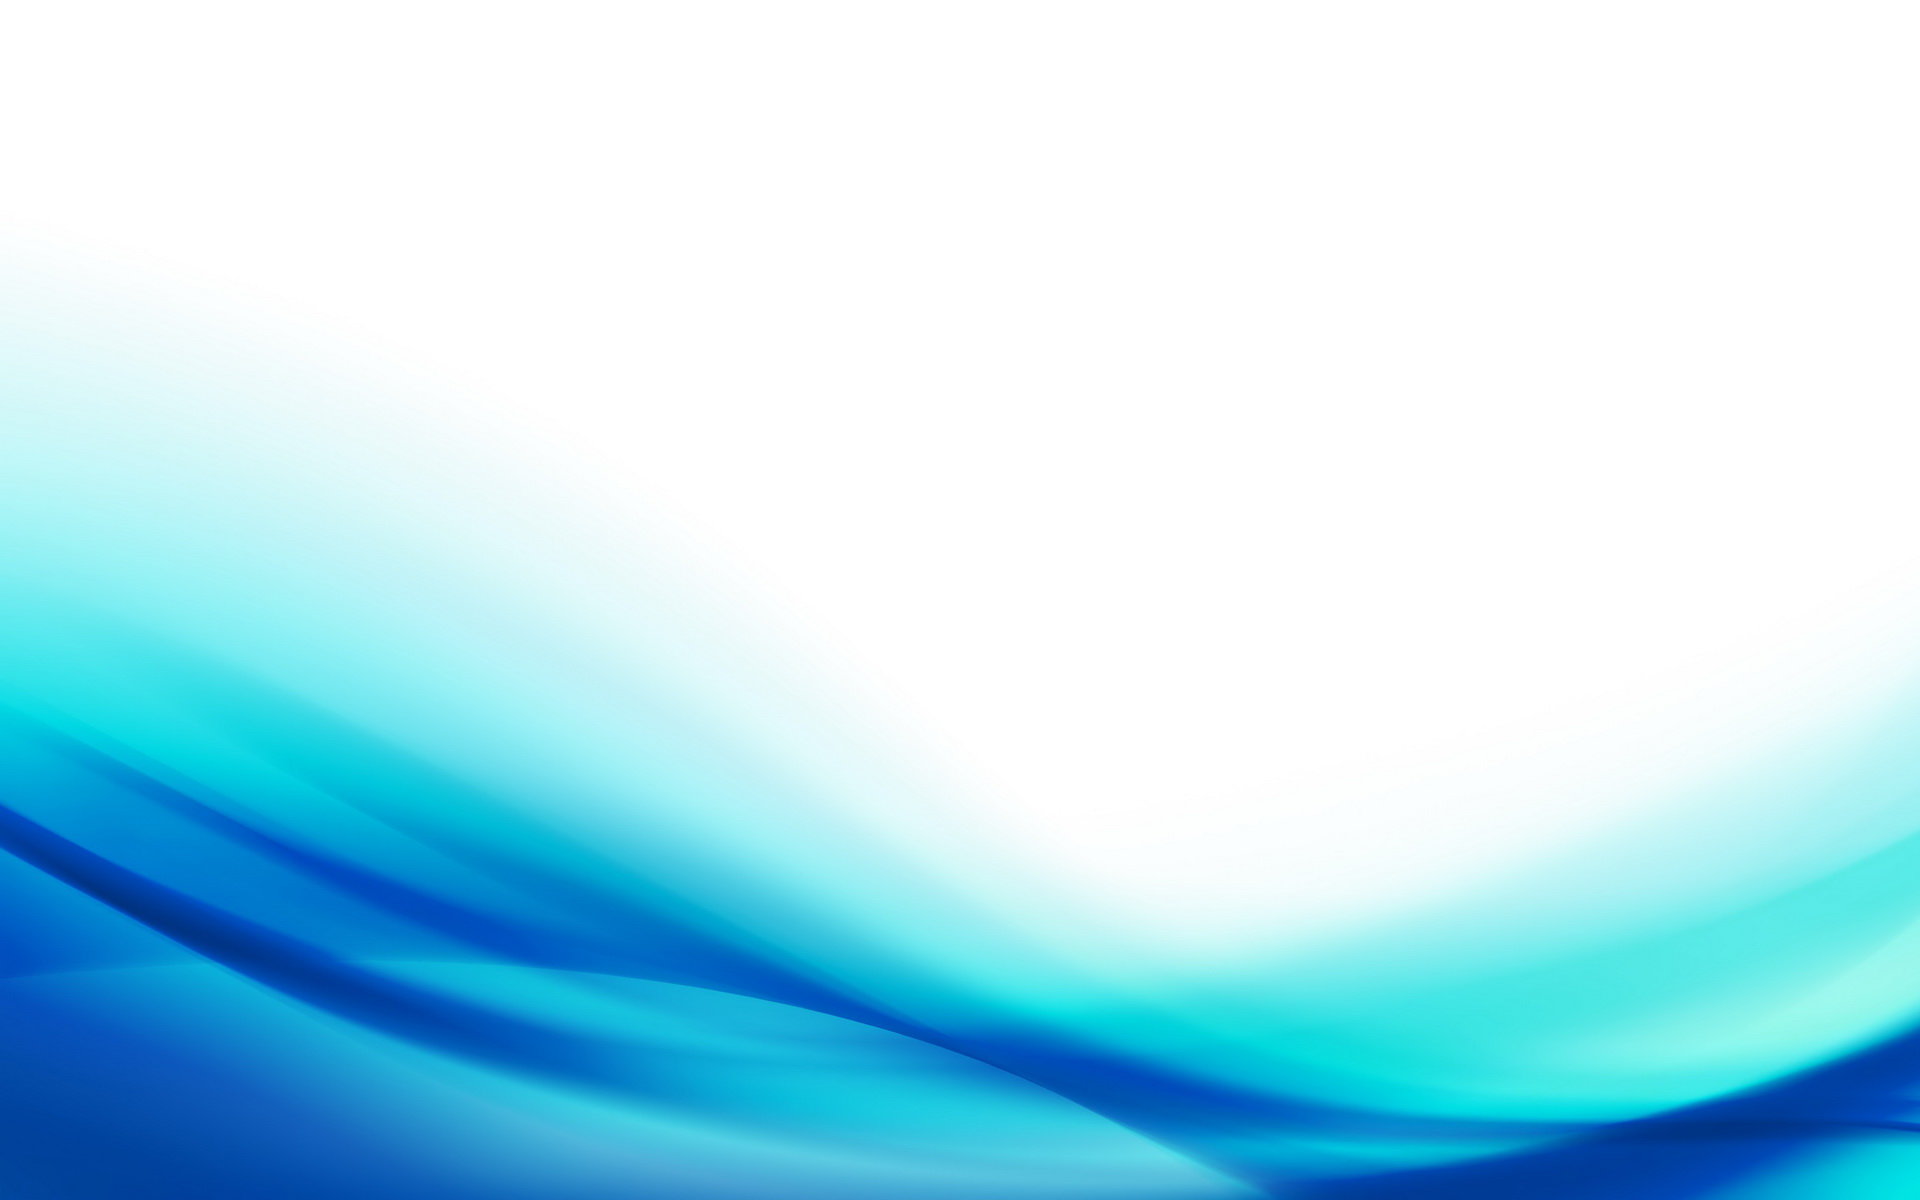 Best Light Blue Wallpaper Id - Blue Background Design - HD Wallpaper 